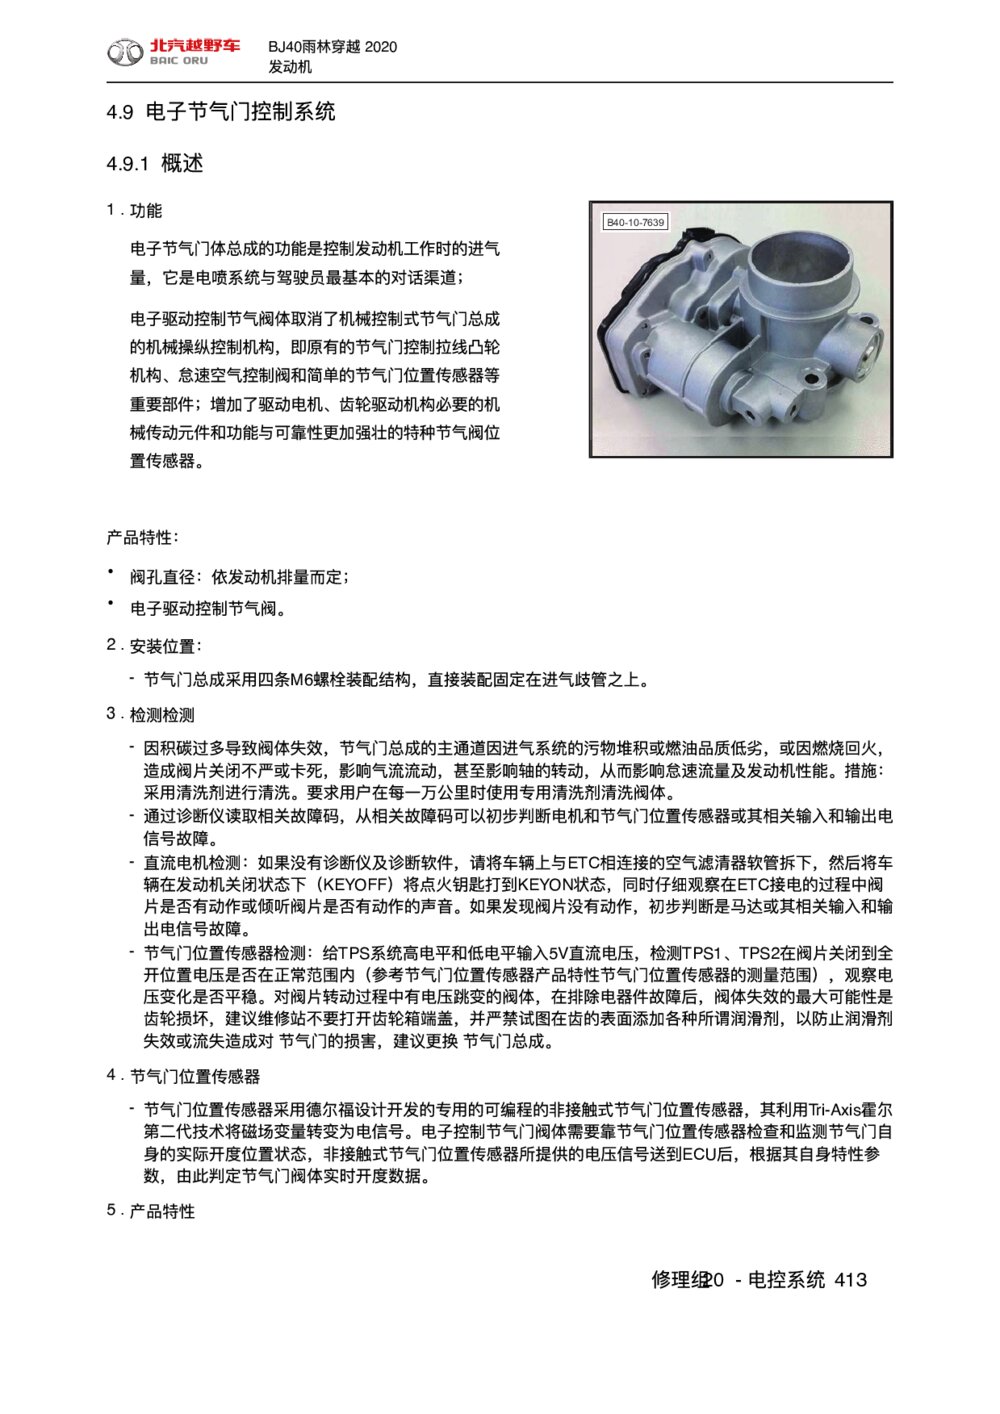 2020款北京BJ40雨林穿越版电子节气门控制系统手册1